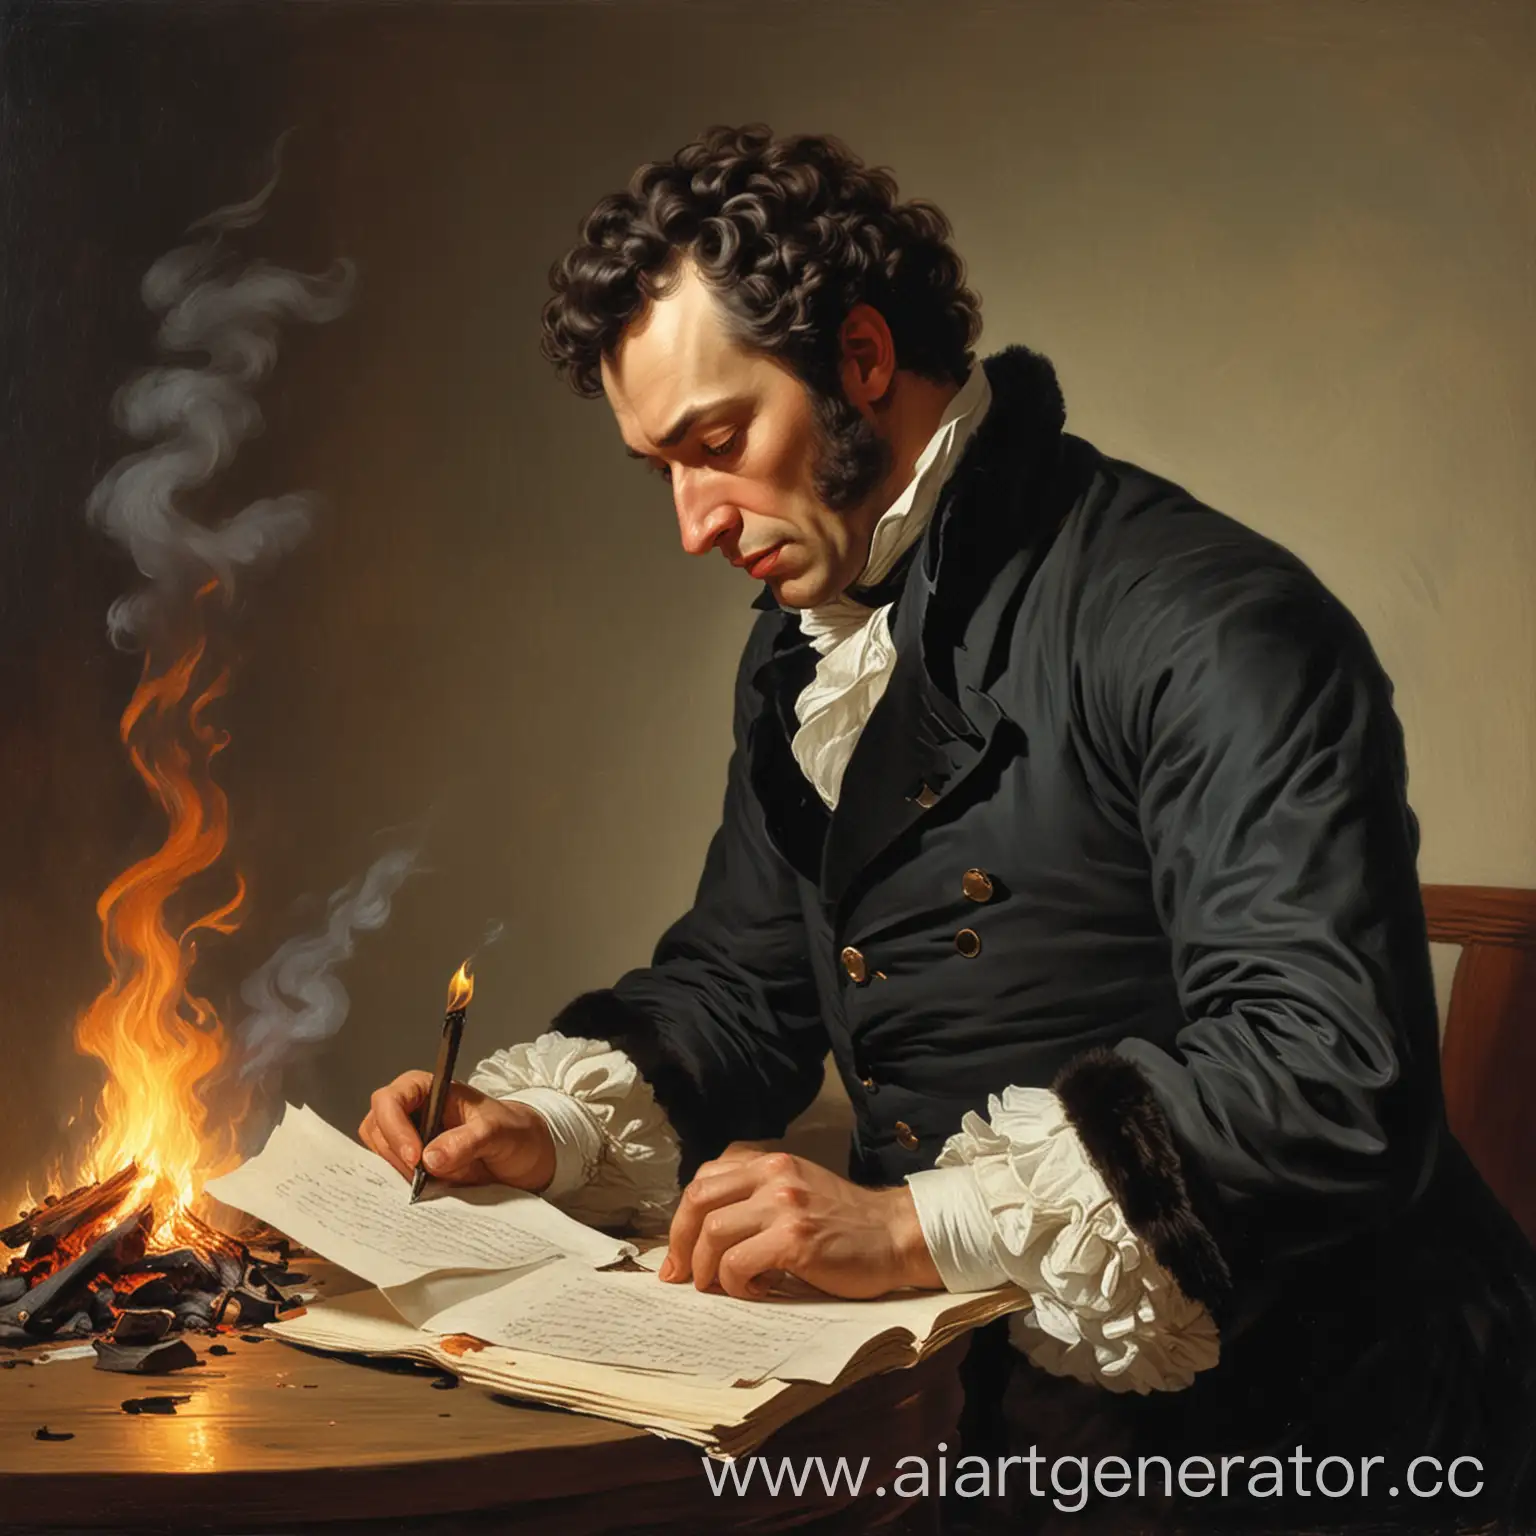 Пушкин сжигает письмо
